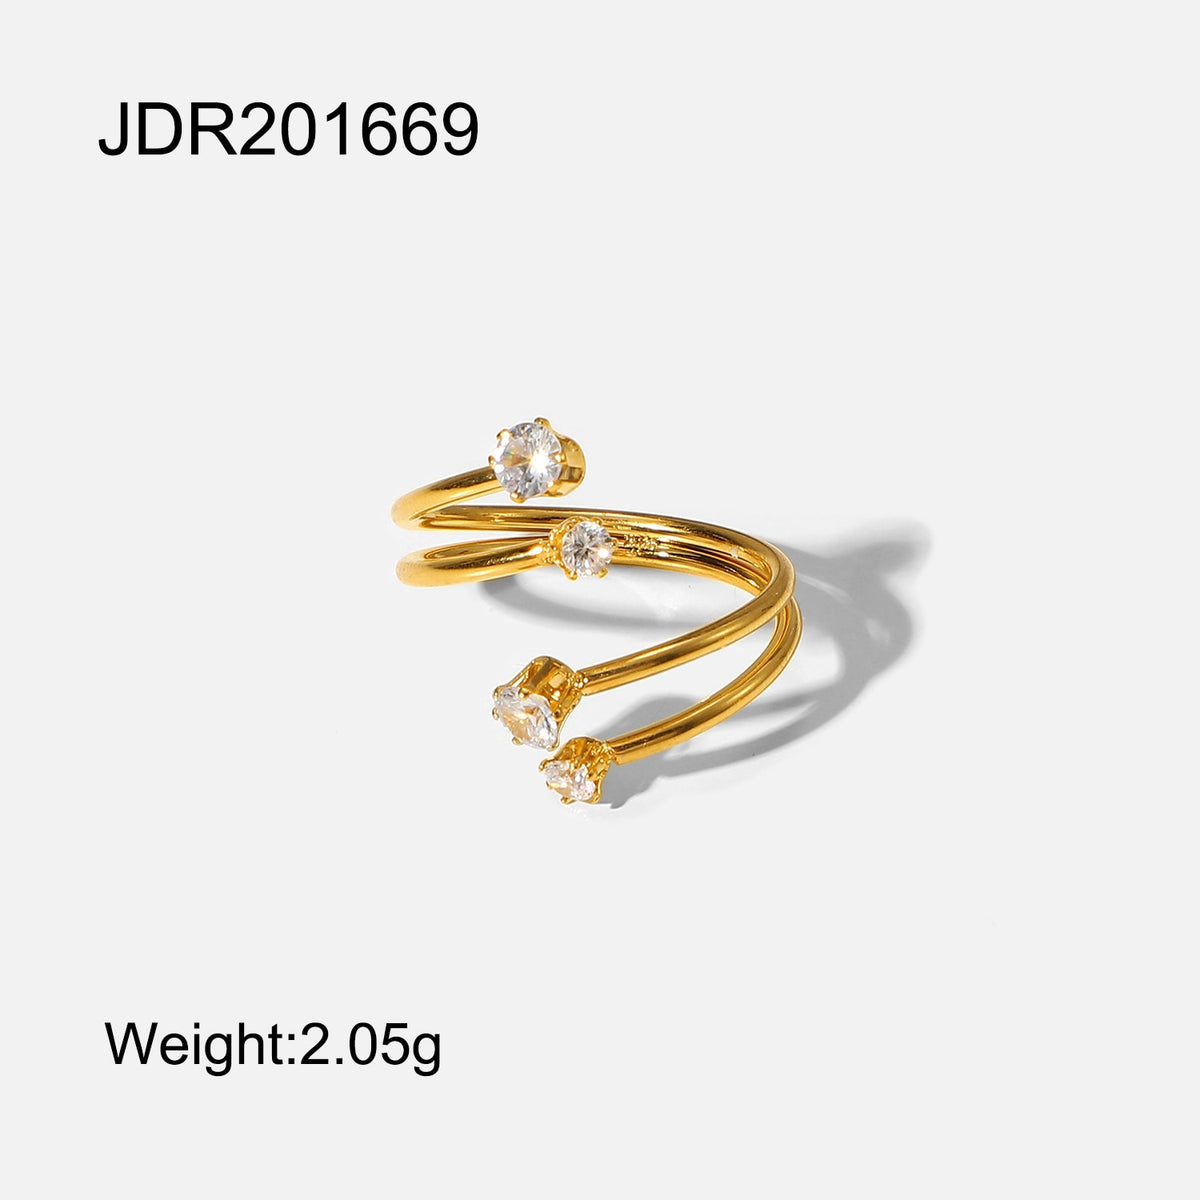 Offener Ring aus Edelstahl mit Mikro-Intarsien, Flash-Diamant, für Damen, Persönlichkeit, Zeigefinger, Party, Schmuck, Geschenk